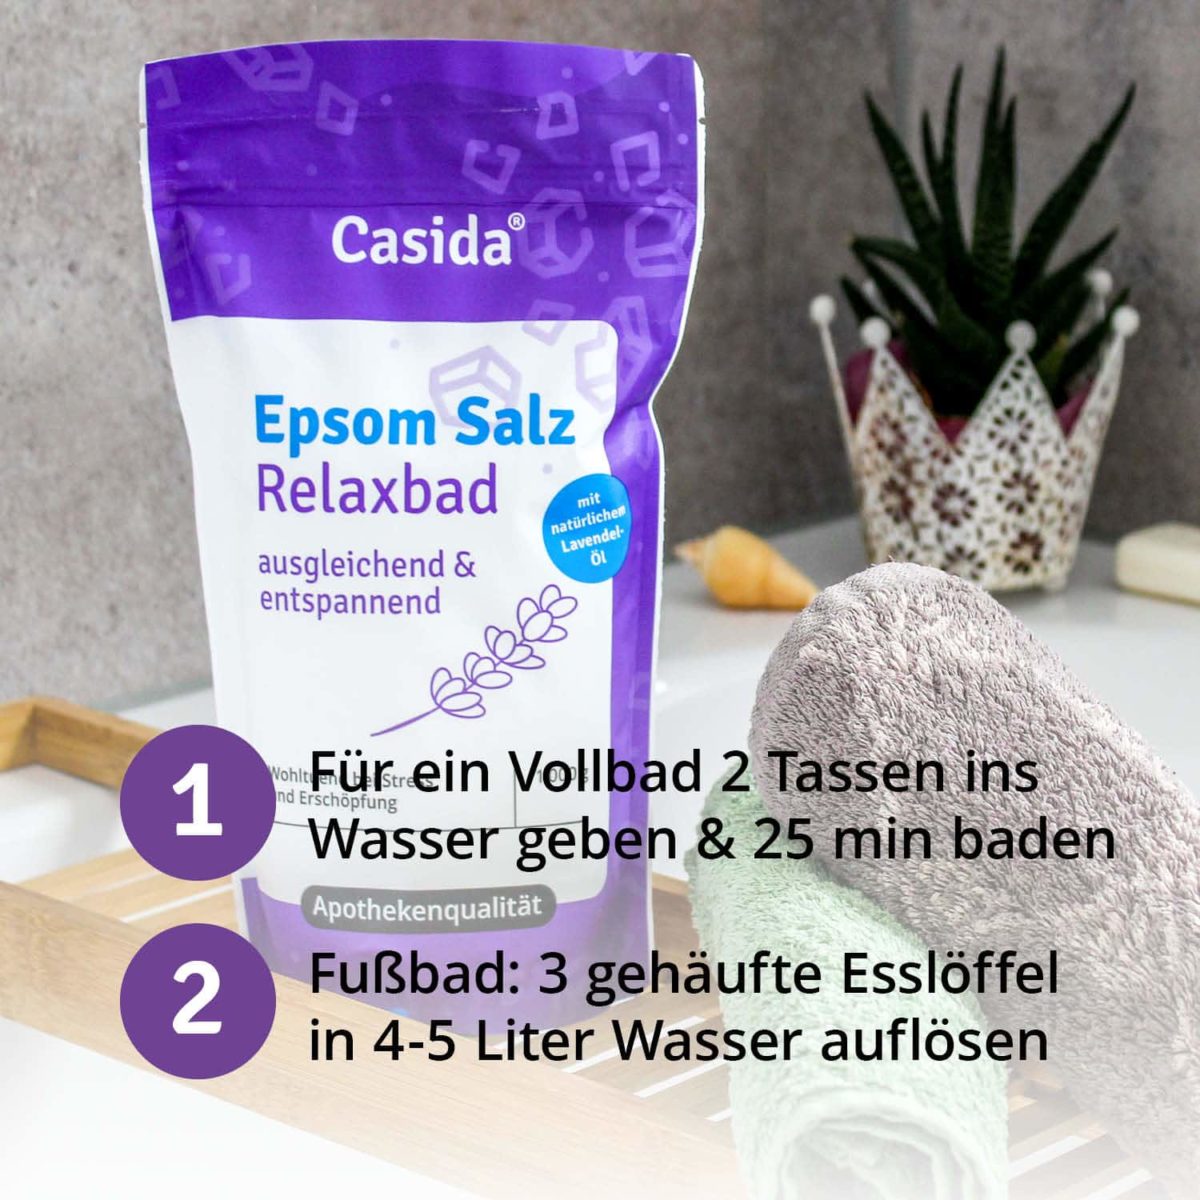 Casida Epsom Salt Relax Bath with lavender 1 kg 12903730 PZN pharmacy relaxation bitter salt